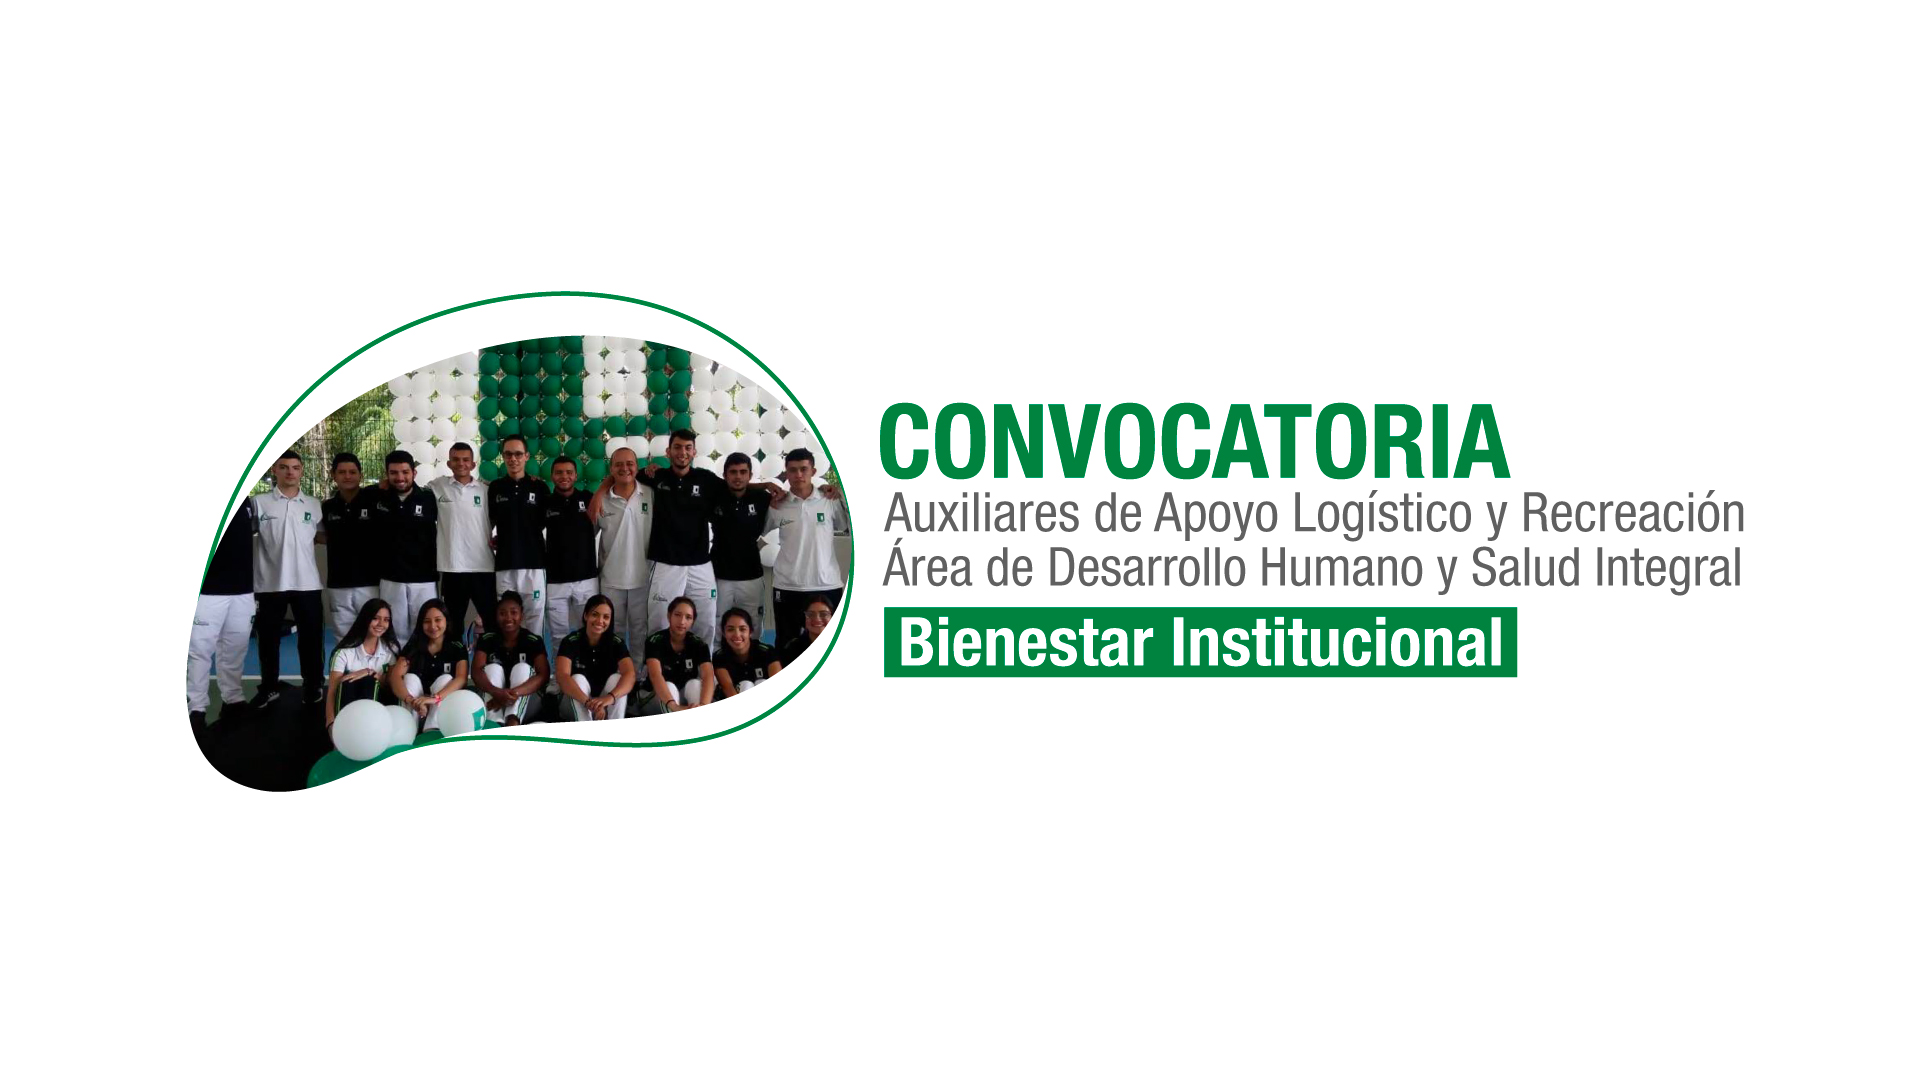 Bienestar Institucional | Convocatoria Auxiliares de Apoyo Logístico y Recreación